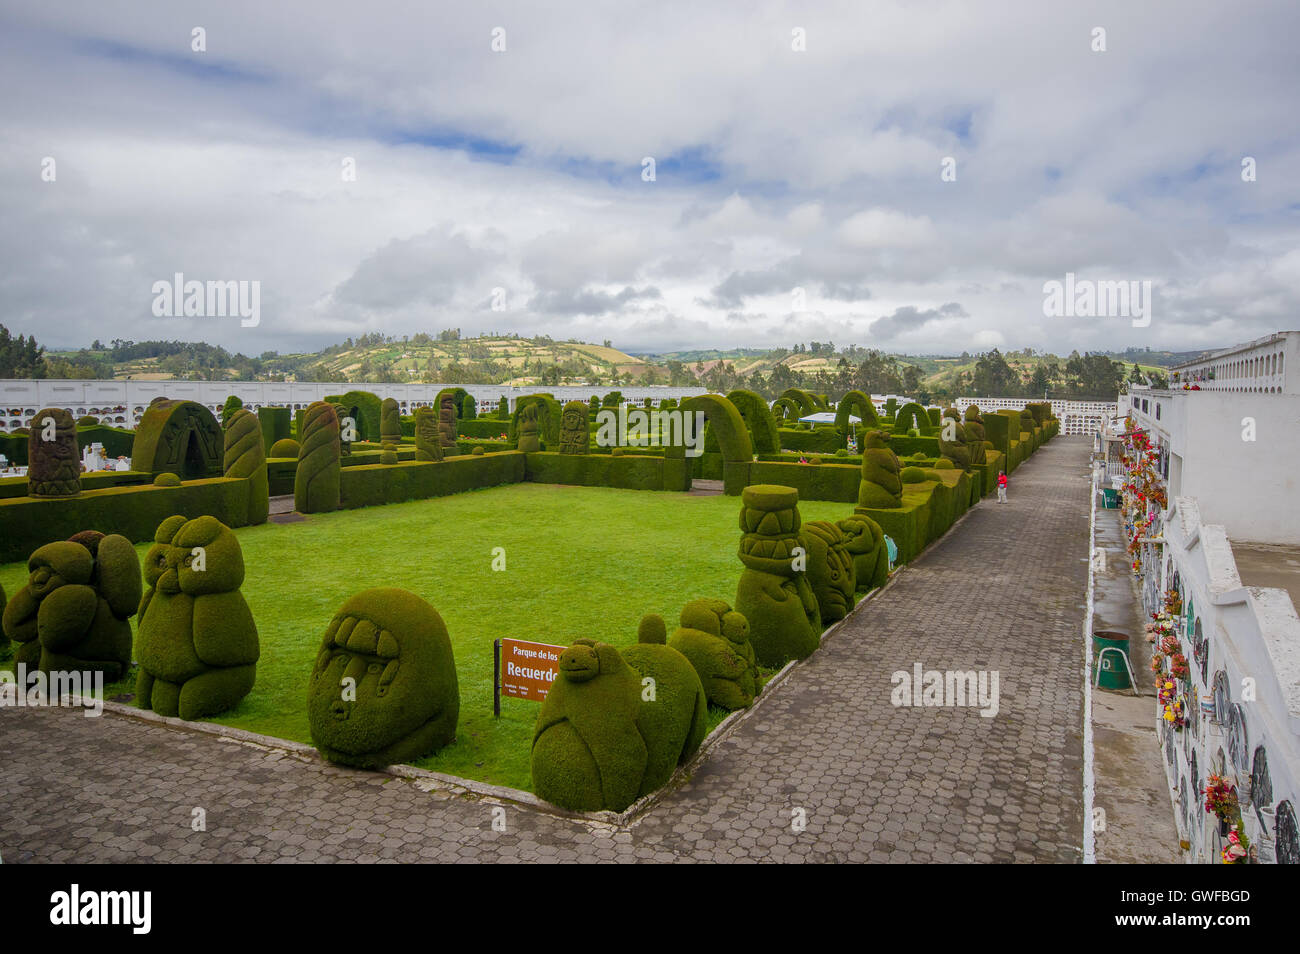 TULCAN, ECUADOR - JULY 3, 2016: parque de los recuerdos is the name of the topiary garden in the cemetery Stock Photo